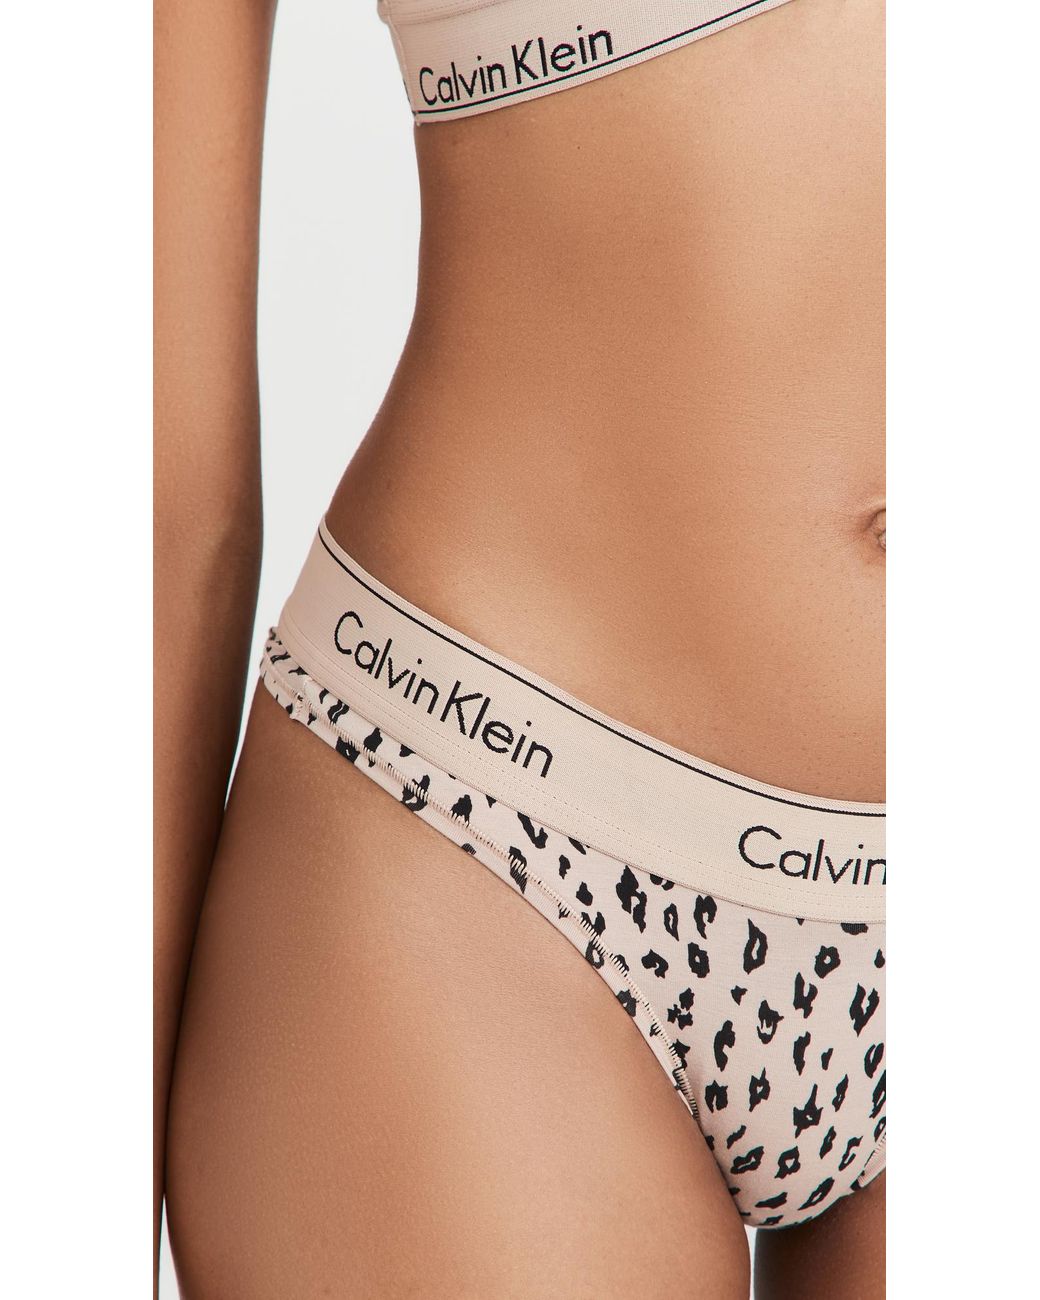 Calvin Klein Modern Cotton Brazilian Cut Panty